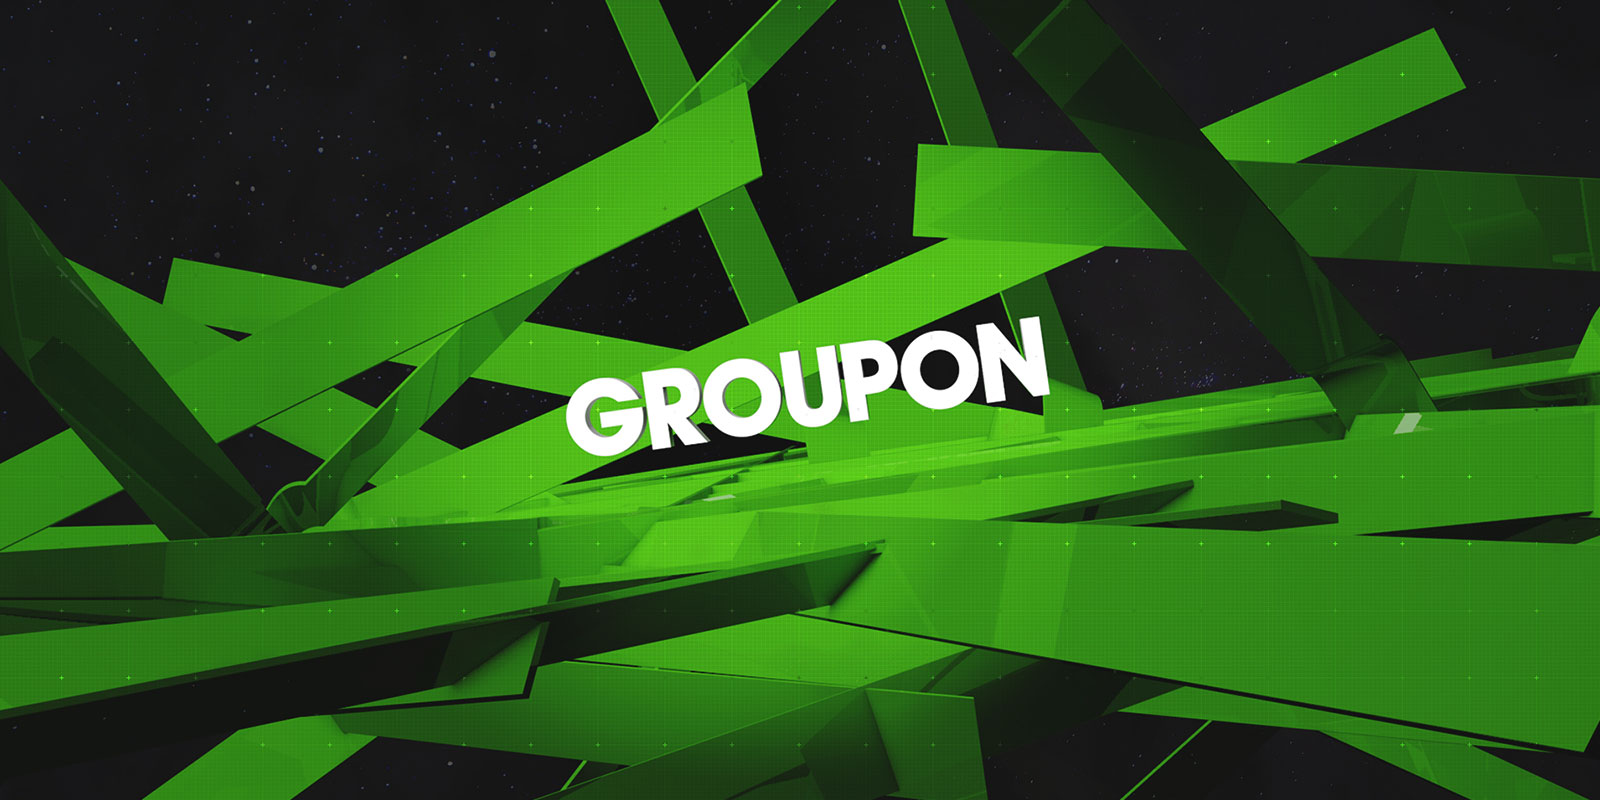 Groupon Zoom Splash Image